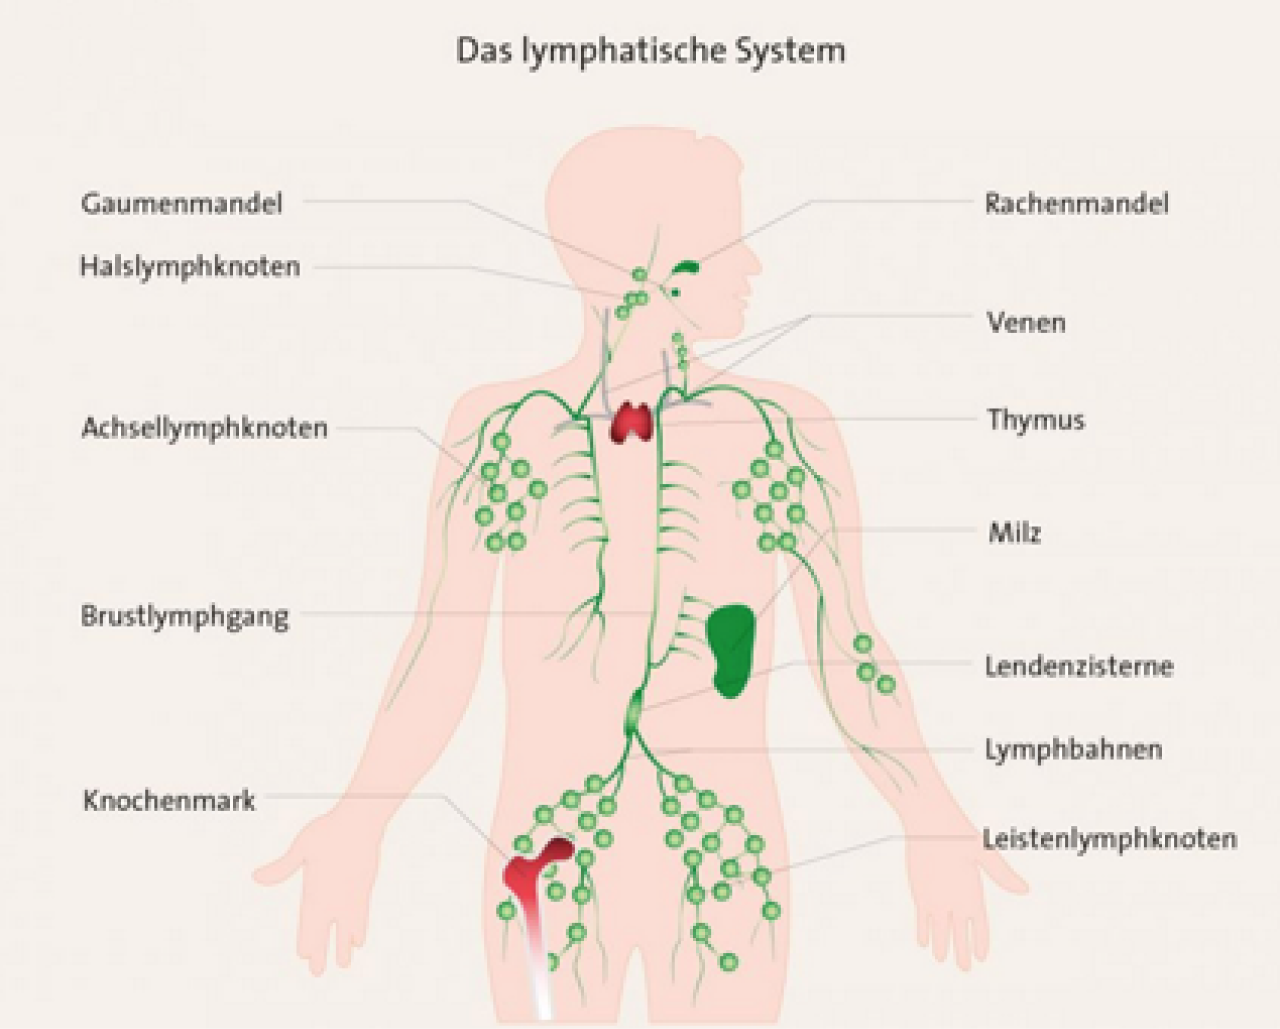 Das lymphatische System abgebildet